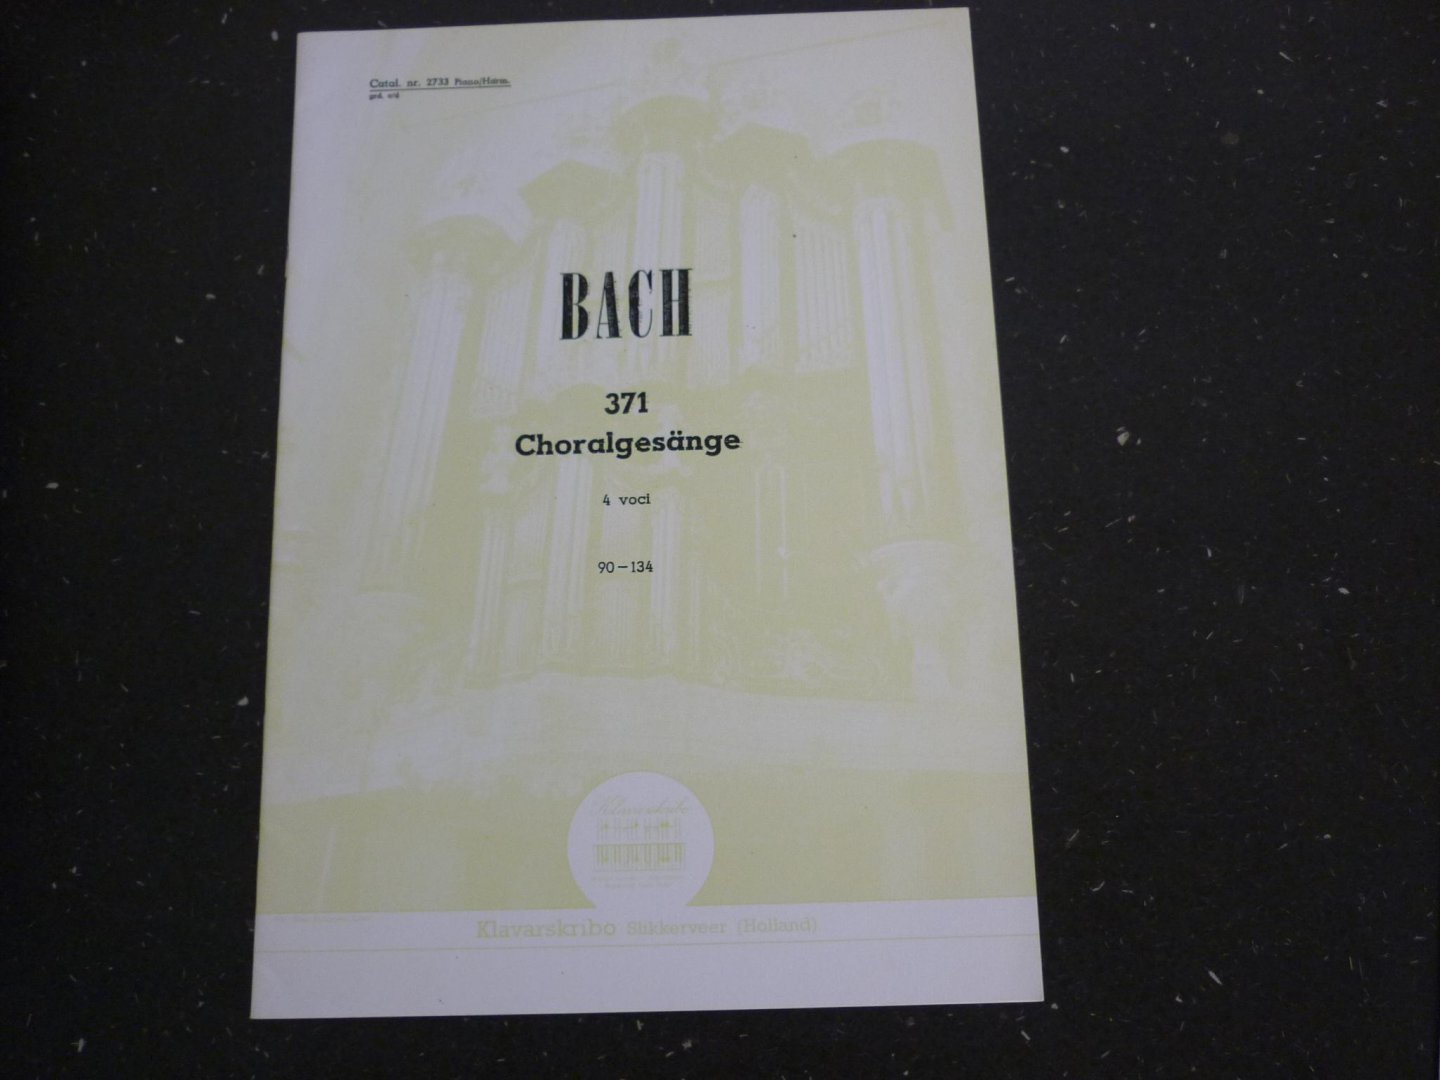 Bach - Choralgesange / 4 voci / 90 - 134 - Klavarskribo